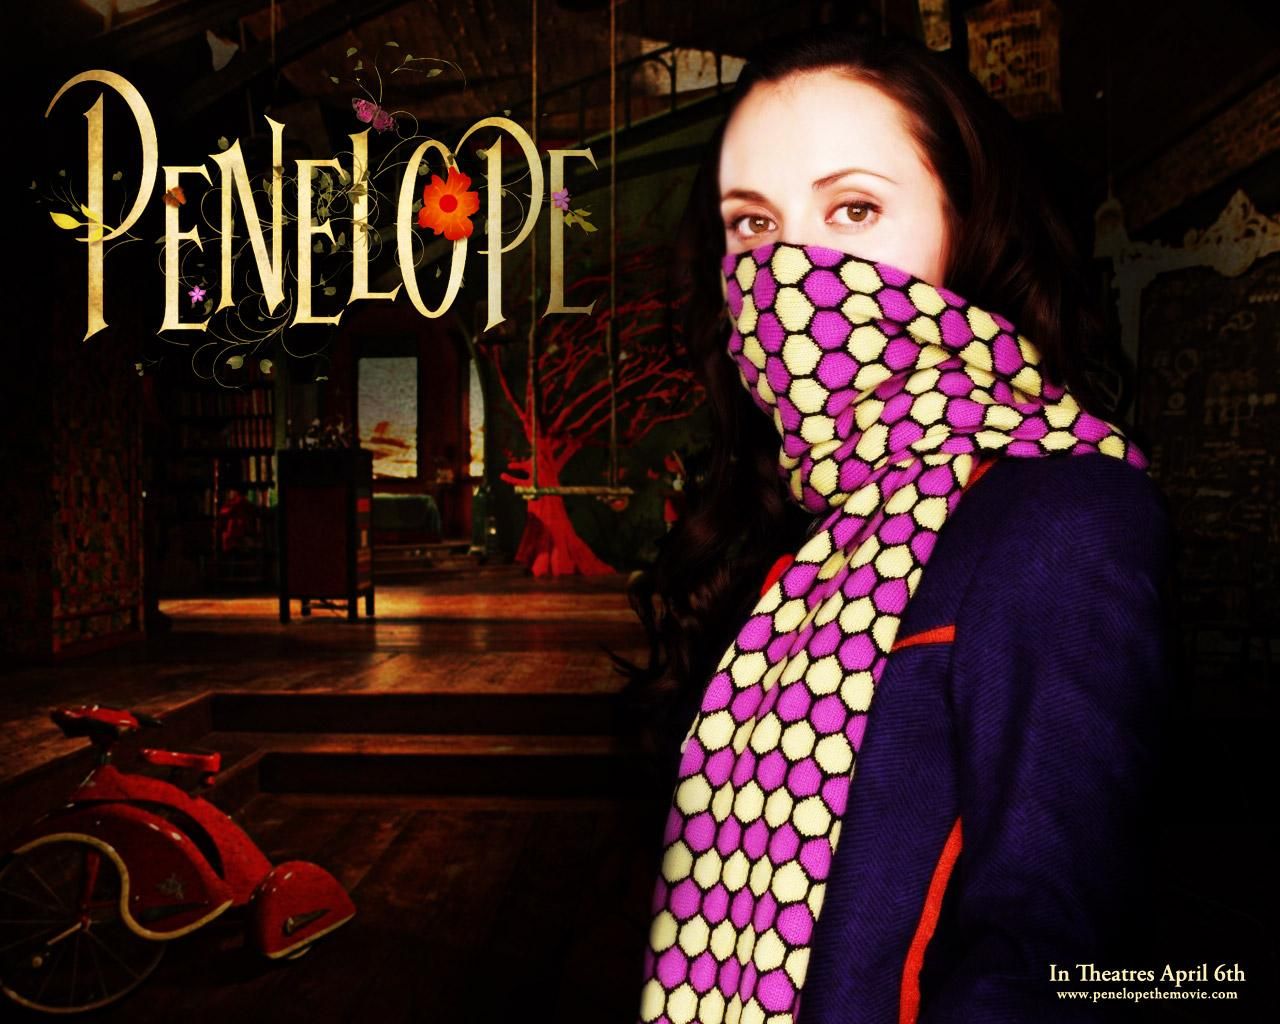 Фильм Пенелопа | Penelope - лучшие обои для рабочего стола